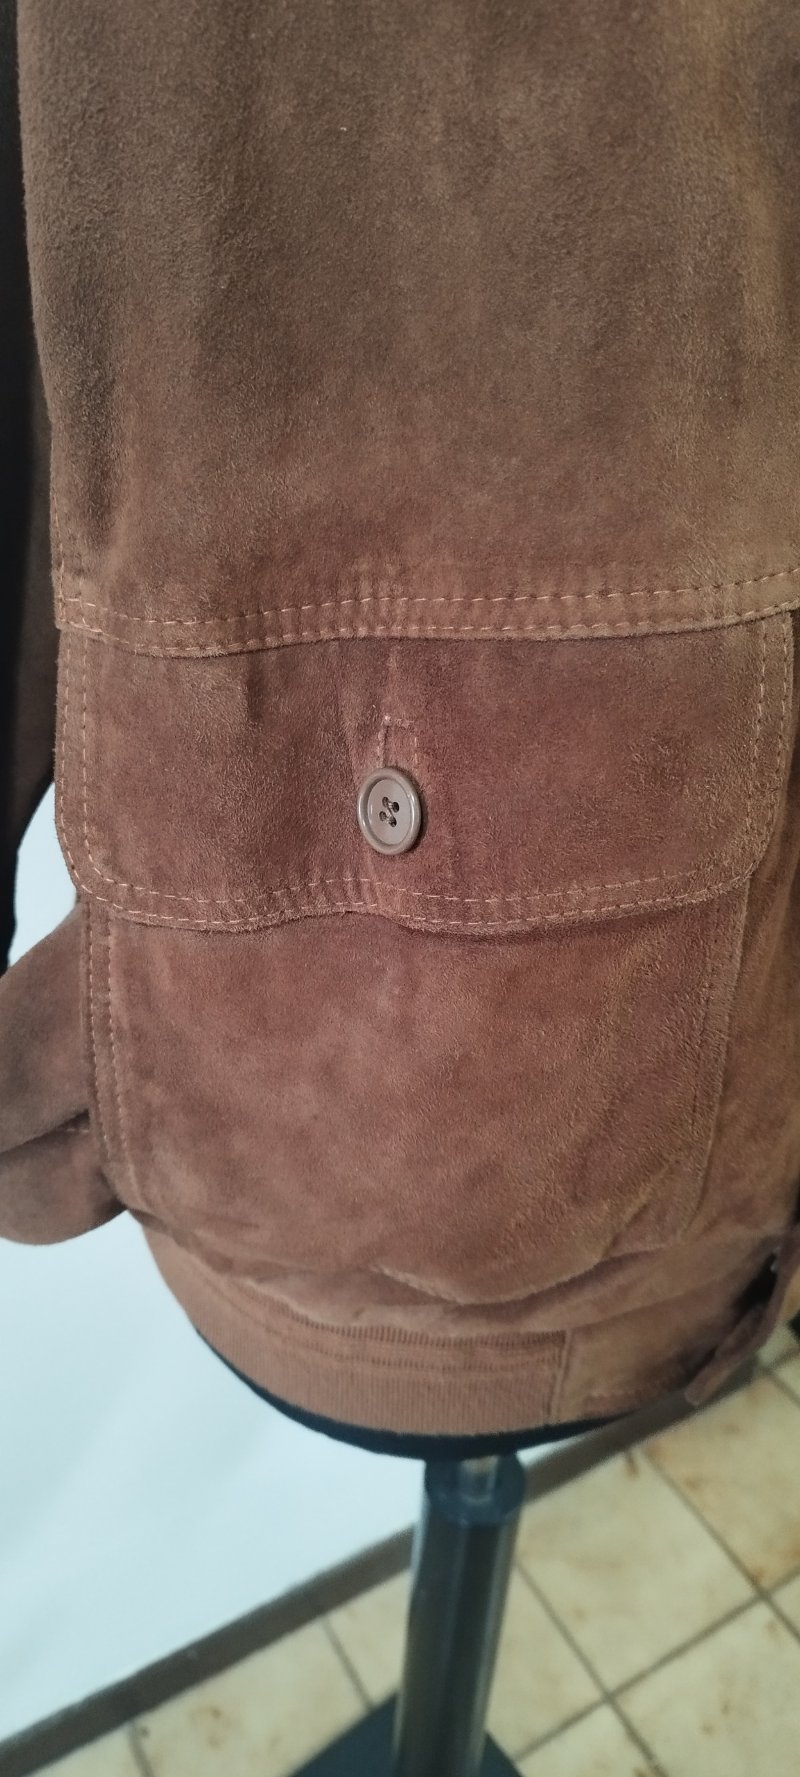 made-in-italy_ren-01_giubotto-jacket-renna-vera-pelle-genuine-leather_brown-marrone_12.jpg